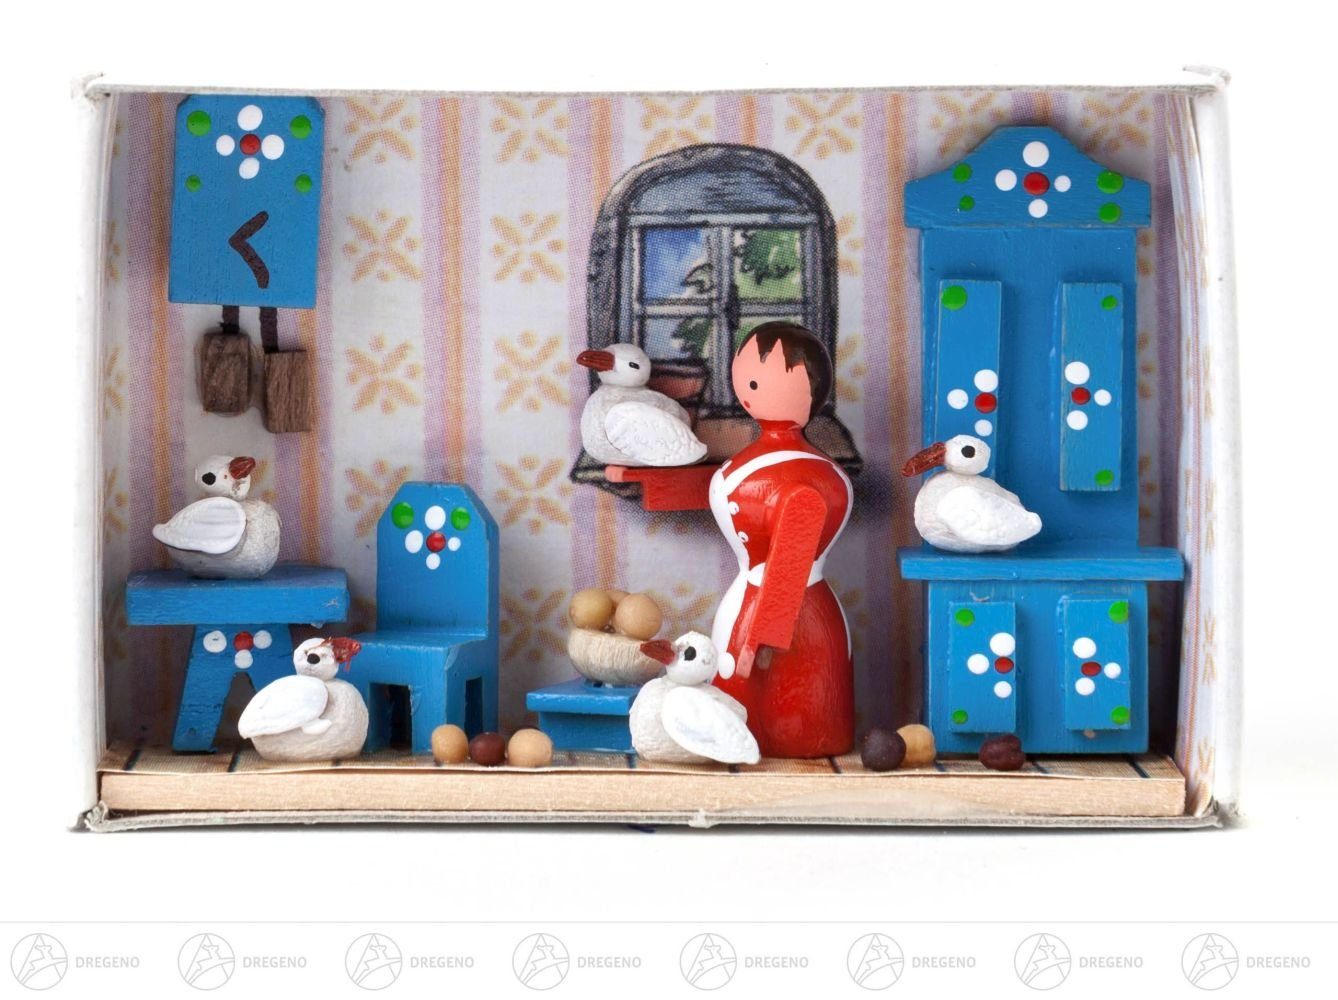 Dregeno Erzgebirge Weihnachtsfigur Miniatur Zündholzschachtel Aschenputtel Breite x Höhe ca 5,5 cmx4 c, für Setzkasten